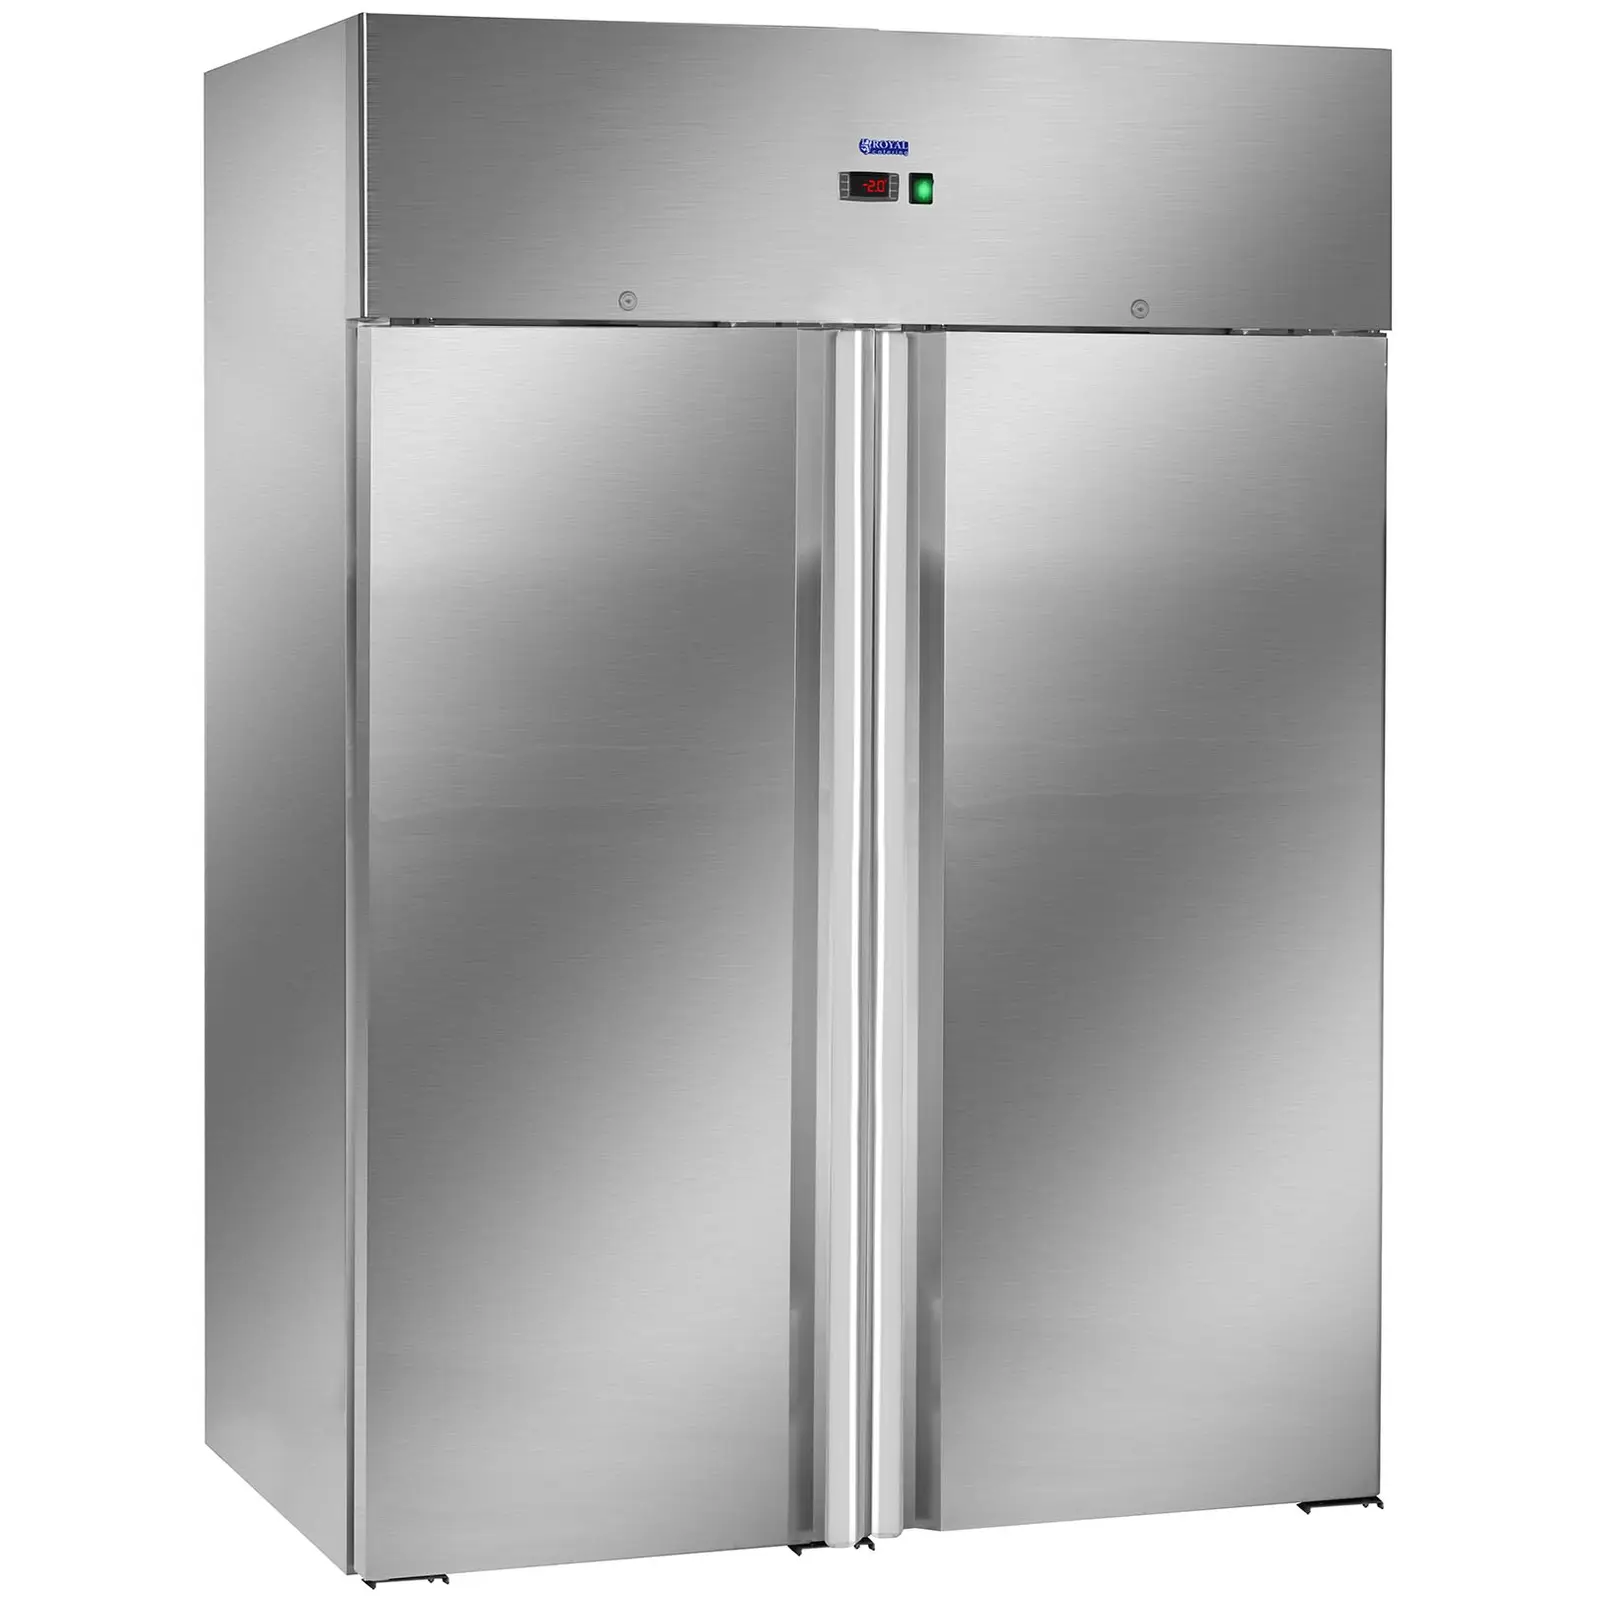 Kjøleskap med to dører - 1168 L